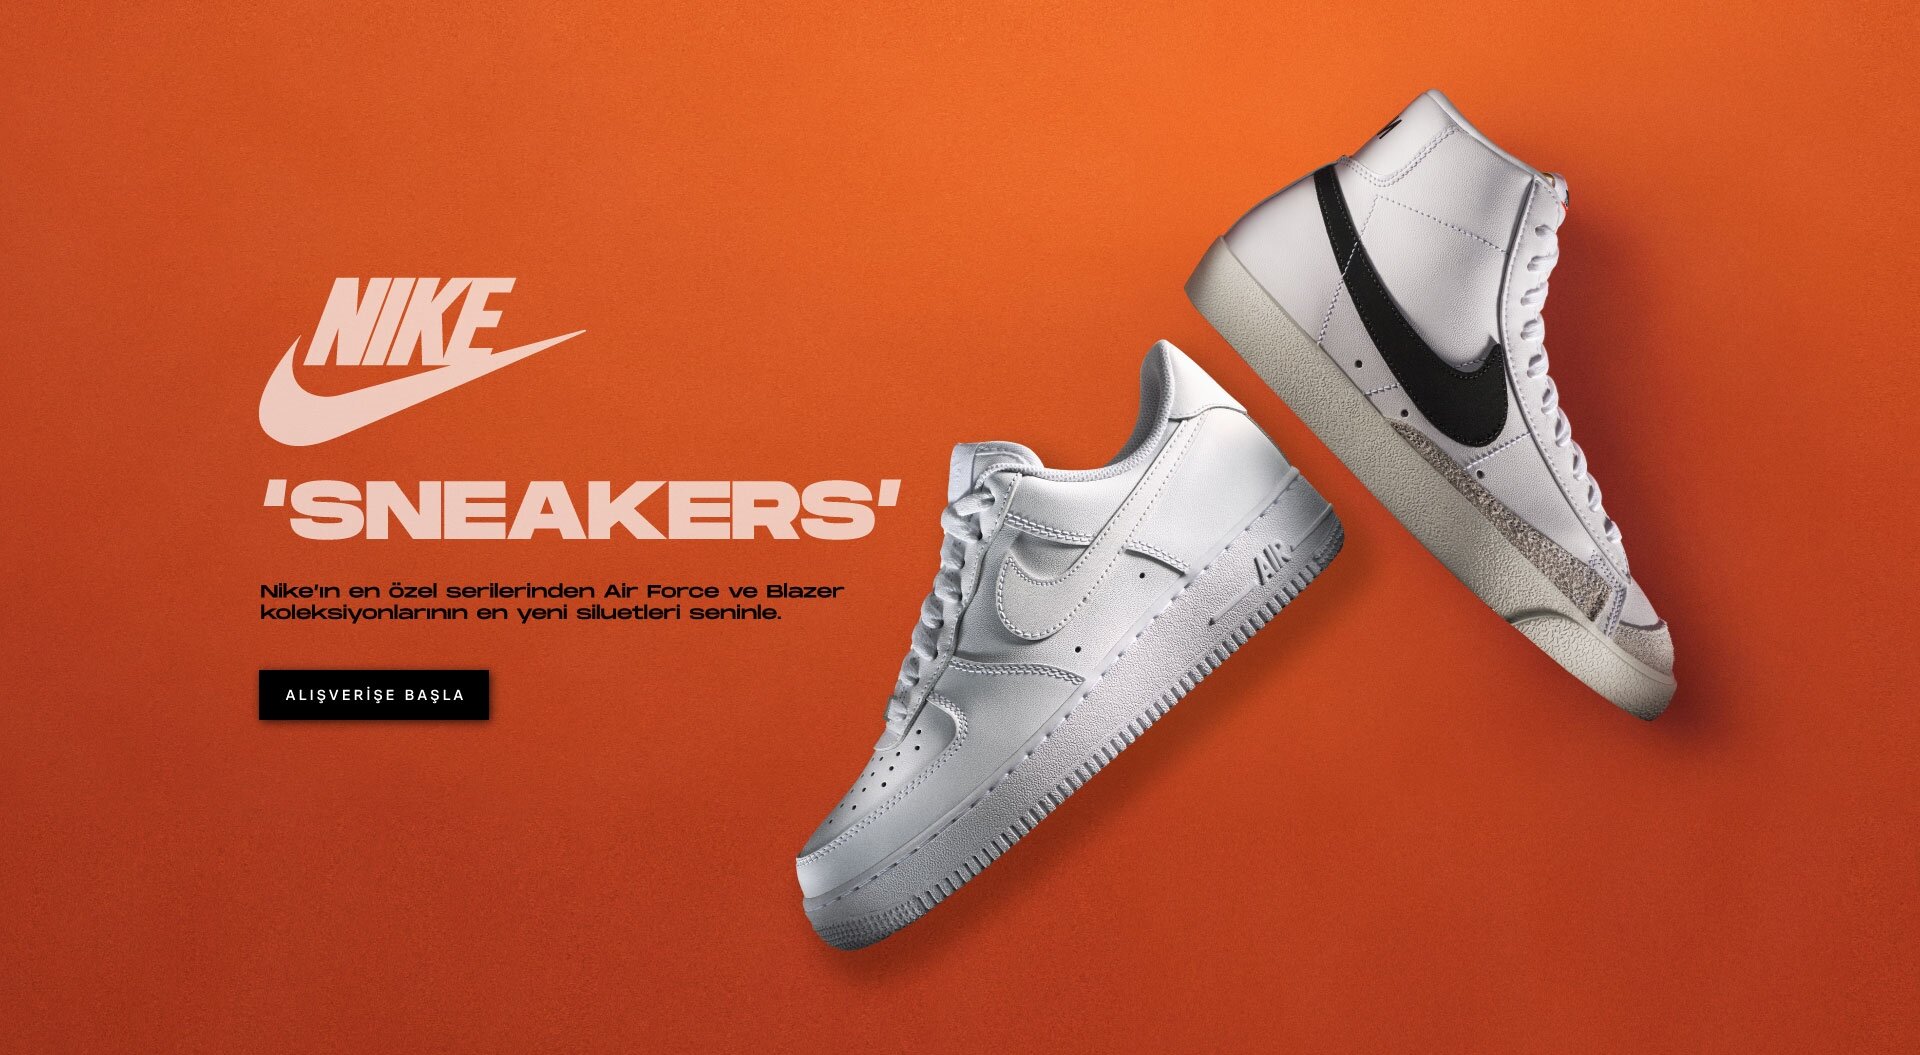 NikeSneaker130522